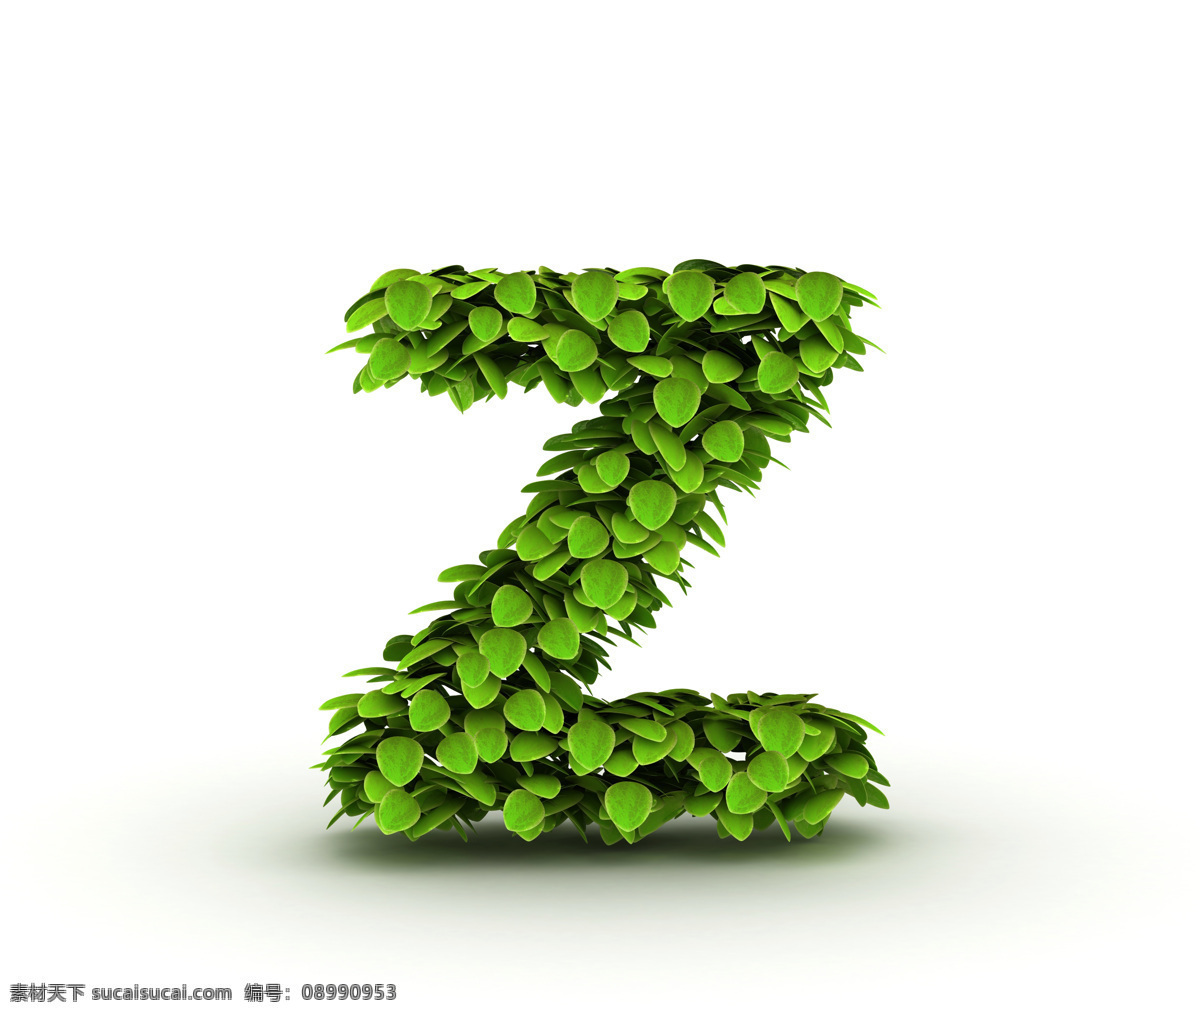 字母 z 设计素材 艺术字 字体设计 叶子 绿叶 绿色 环保 立体字 书画文字 文化艺术 白色